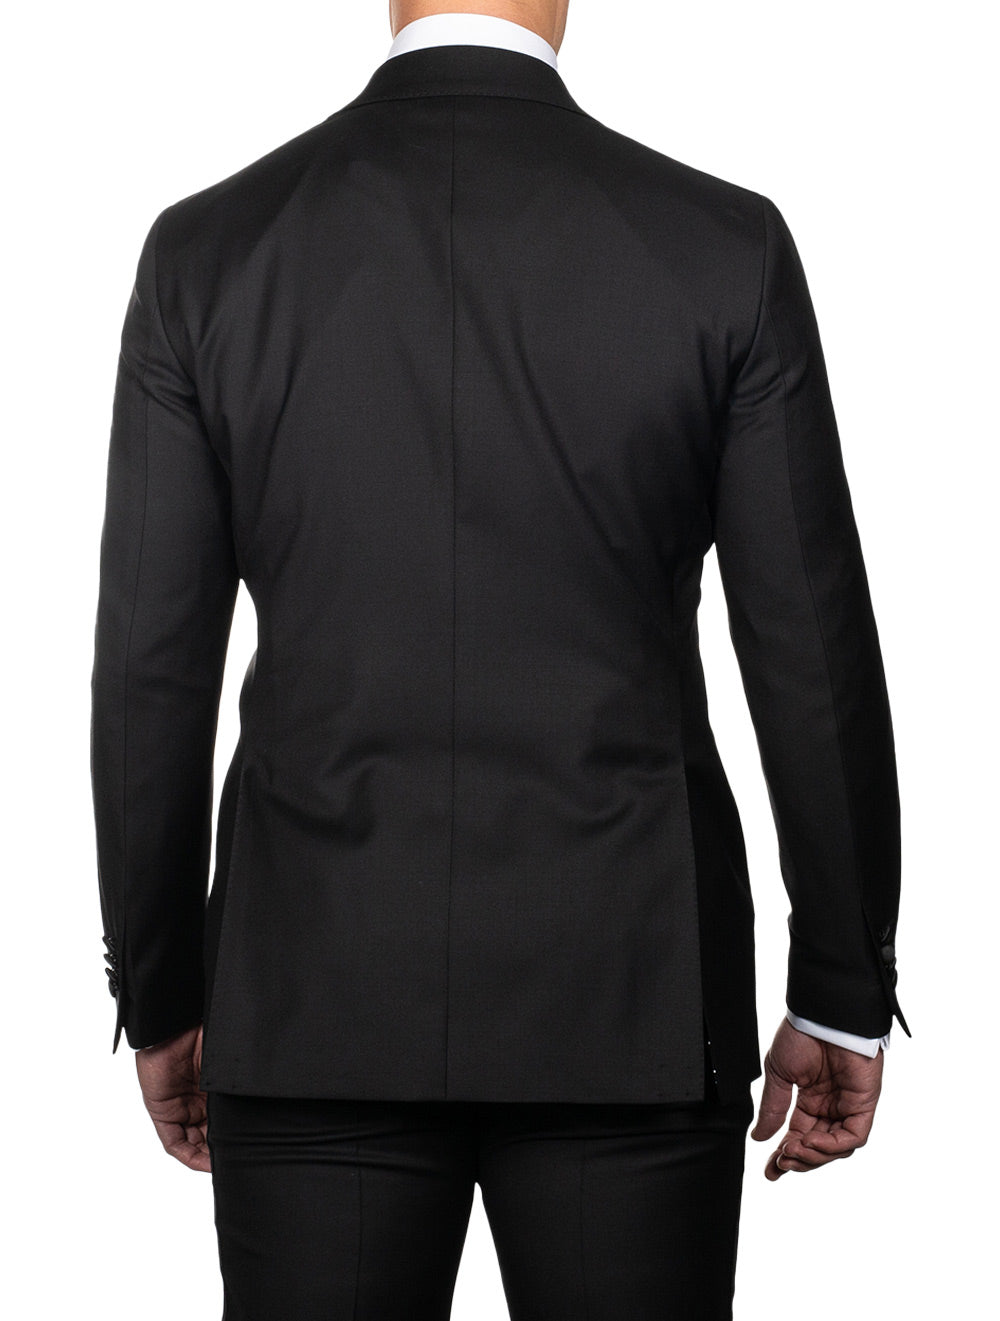 Louis Copeland Dress Suit Tuxedo Black 2 Piece 1 Button Single Peaked Lapel 3